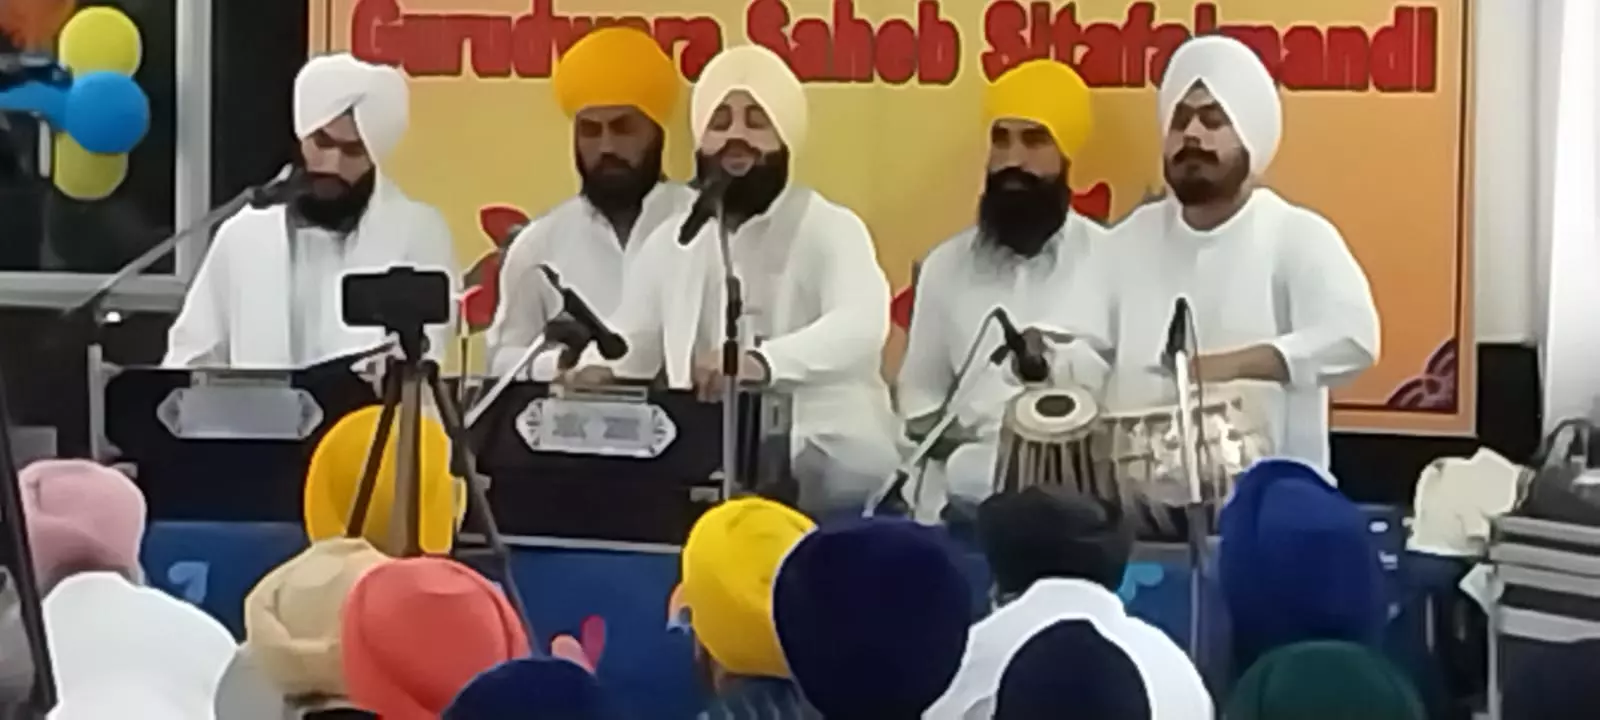 Ninth Sikh guru’s ‘Prakash purab’ celebrated with gaiety